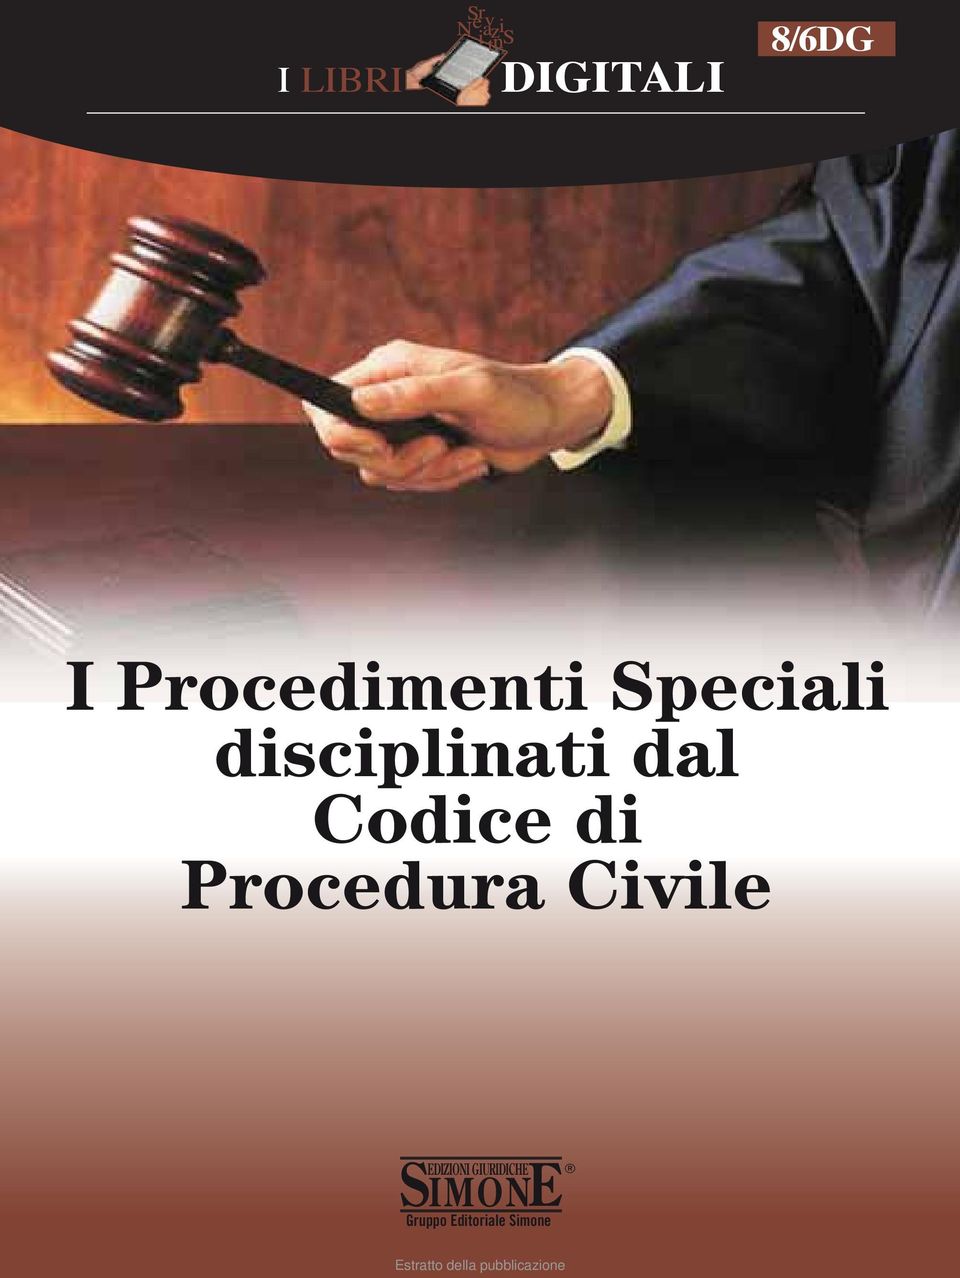 Procedura Civile IMONE